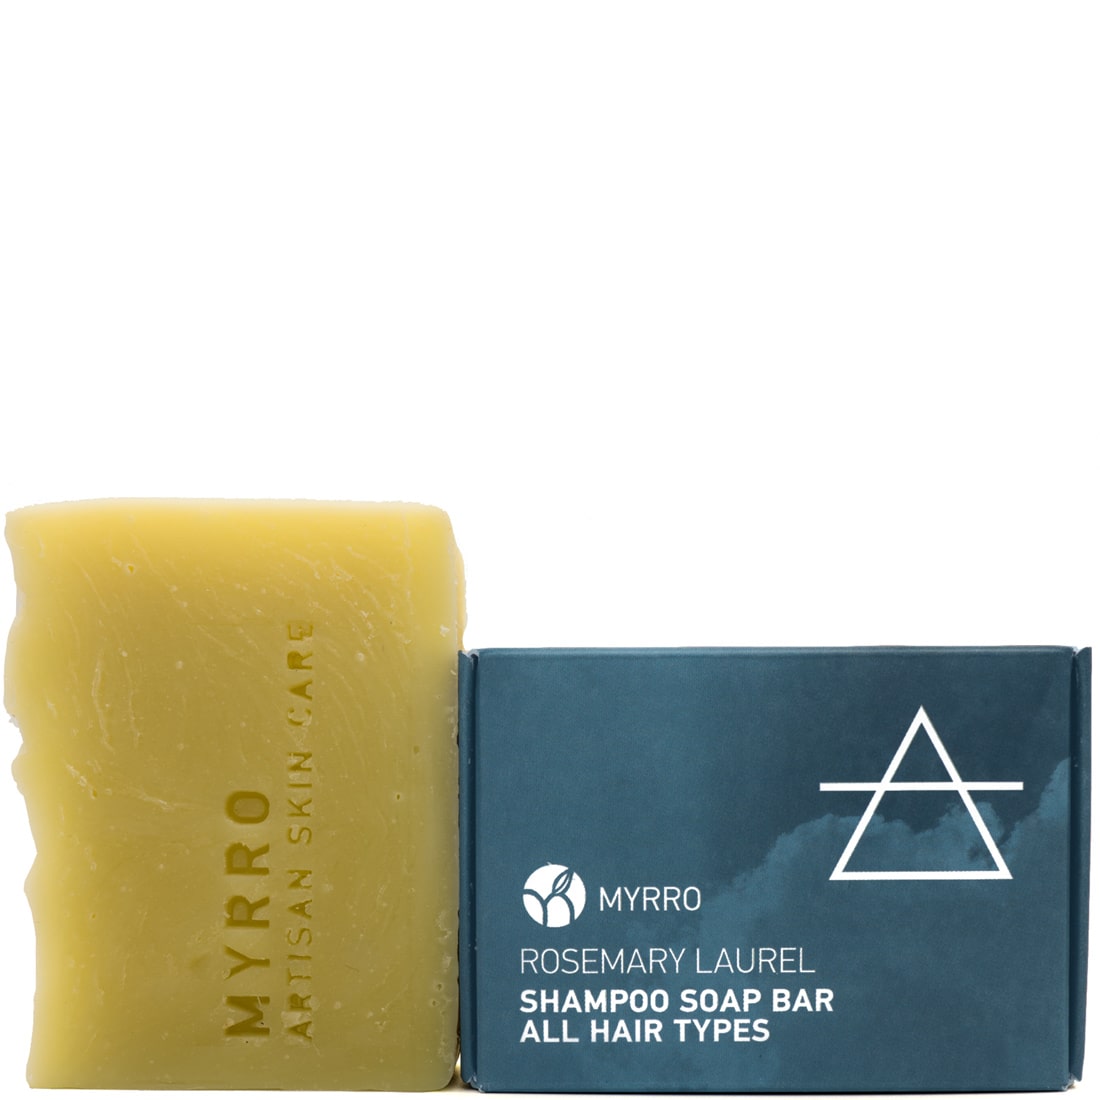 Shampoo-Soap-Bar-min.jpg